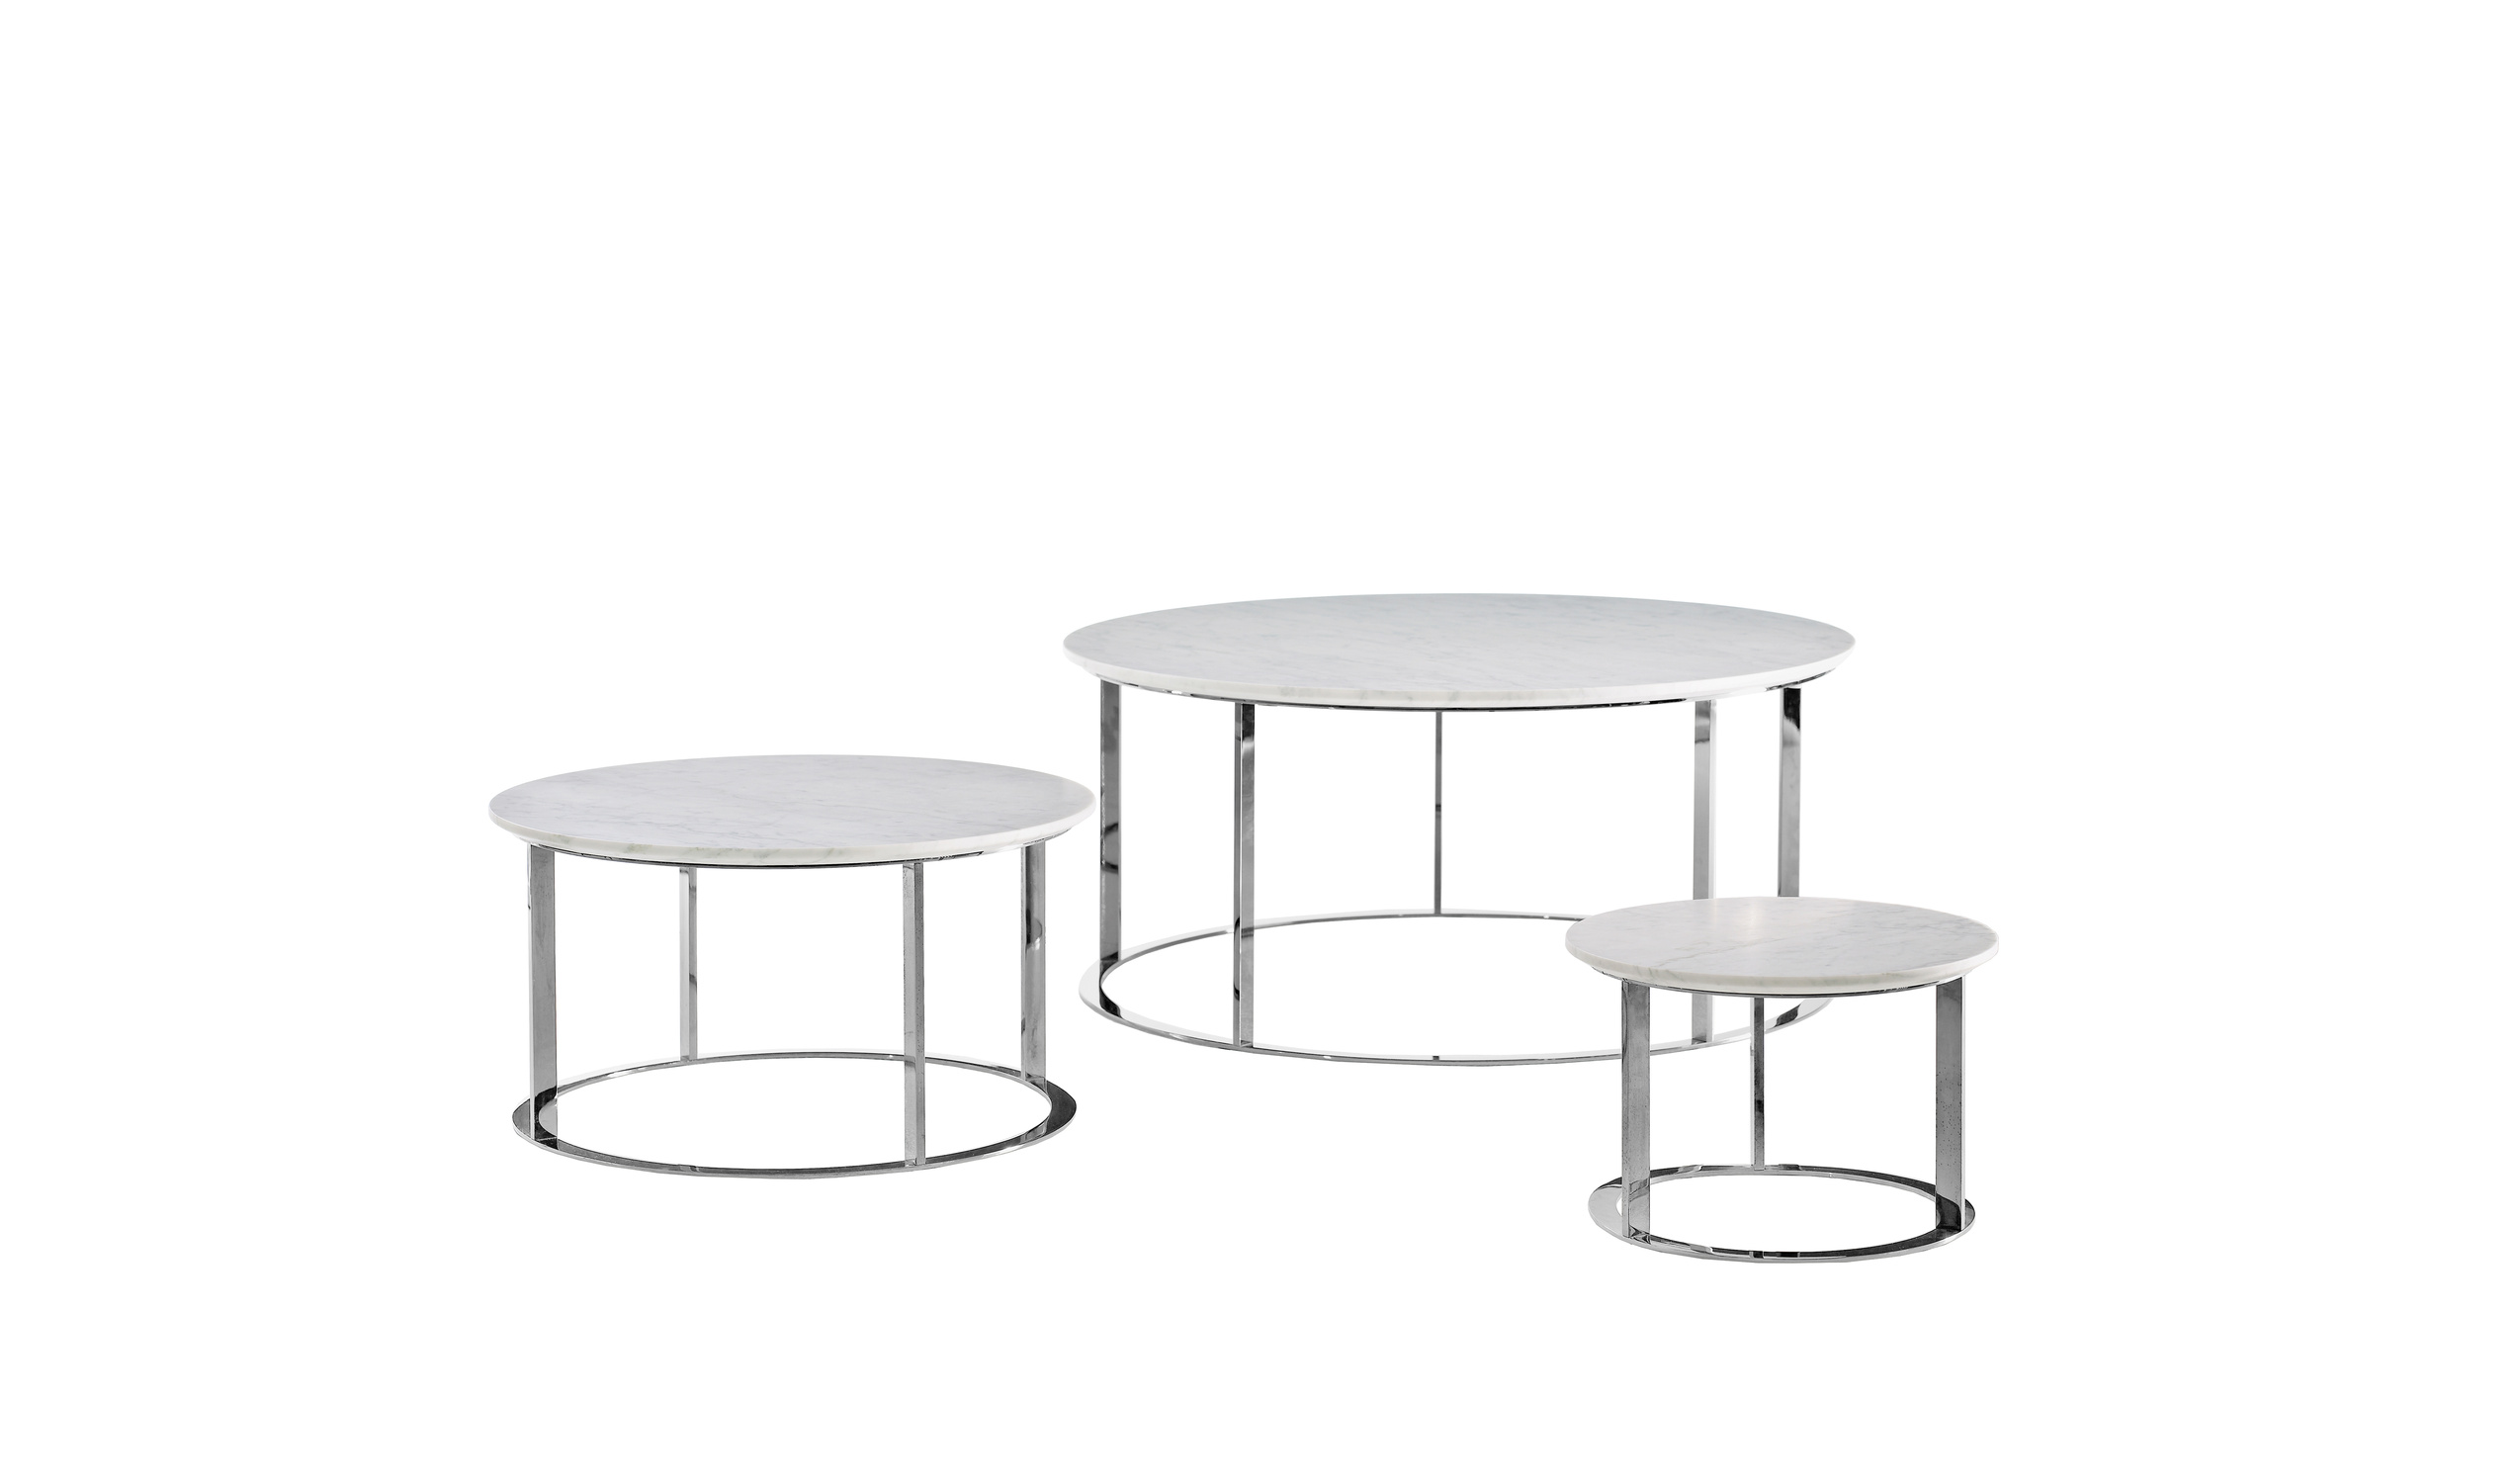 Designer italian modern small tables  - Mera Small tables 1